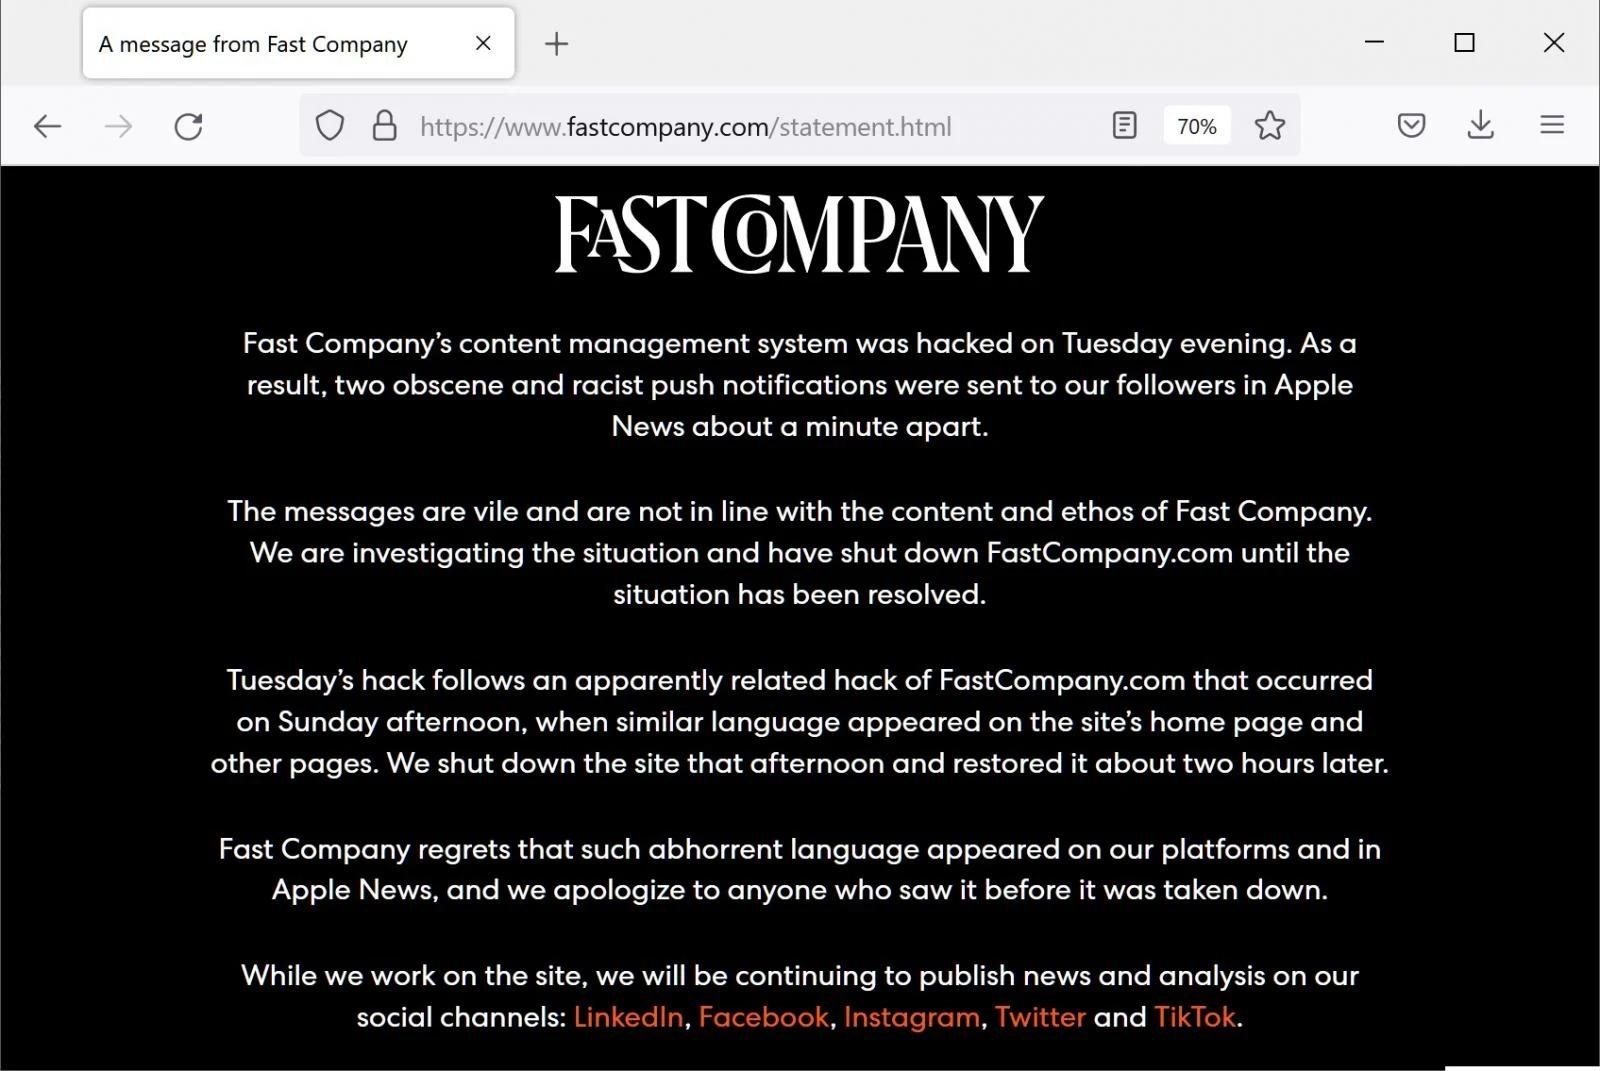 The hacker hacked Fast Company